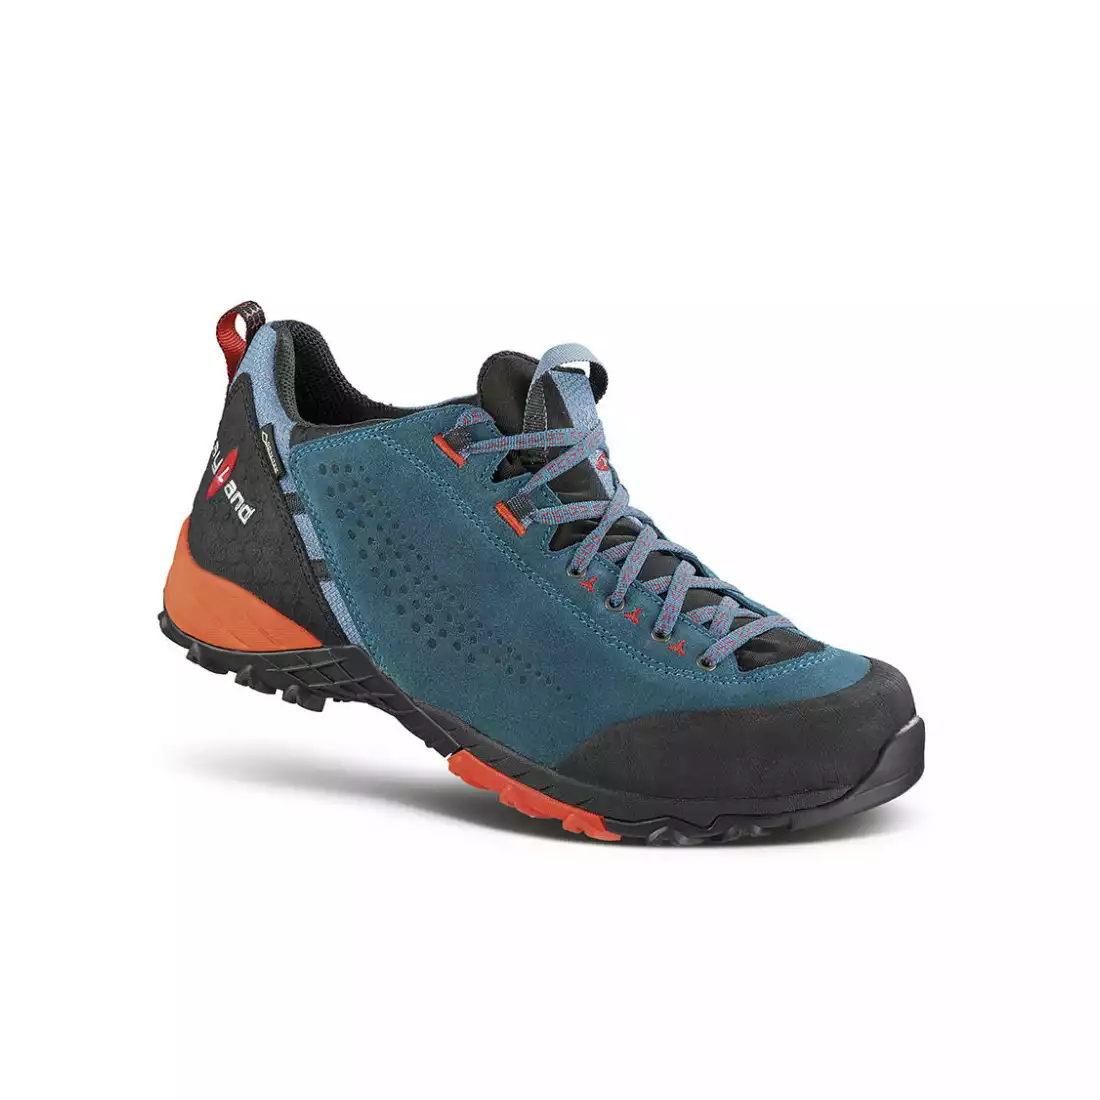 KAYLAND ALPHA GTX Men's trekking shoes, GORE-TEX, VIBRAM, Blue